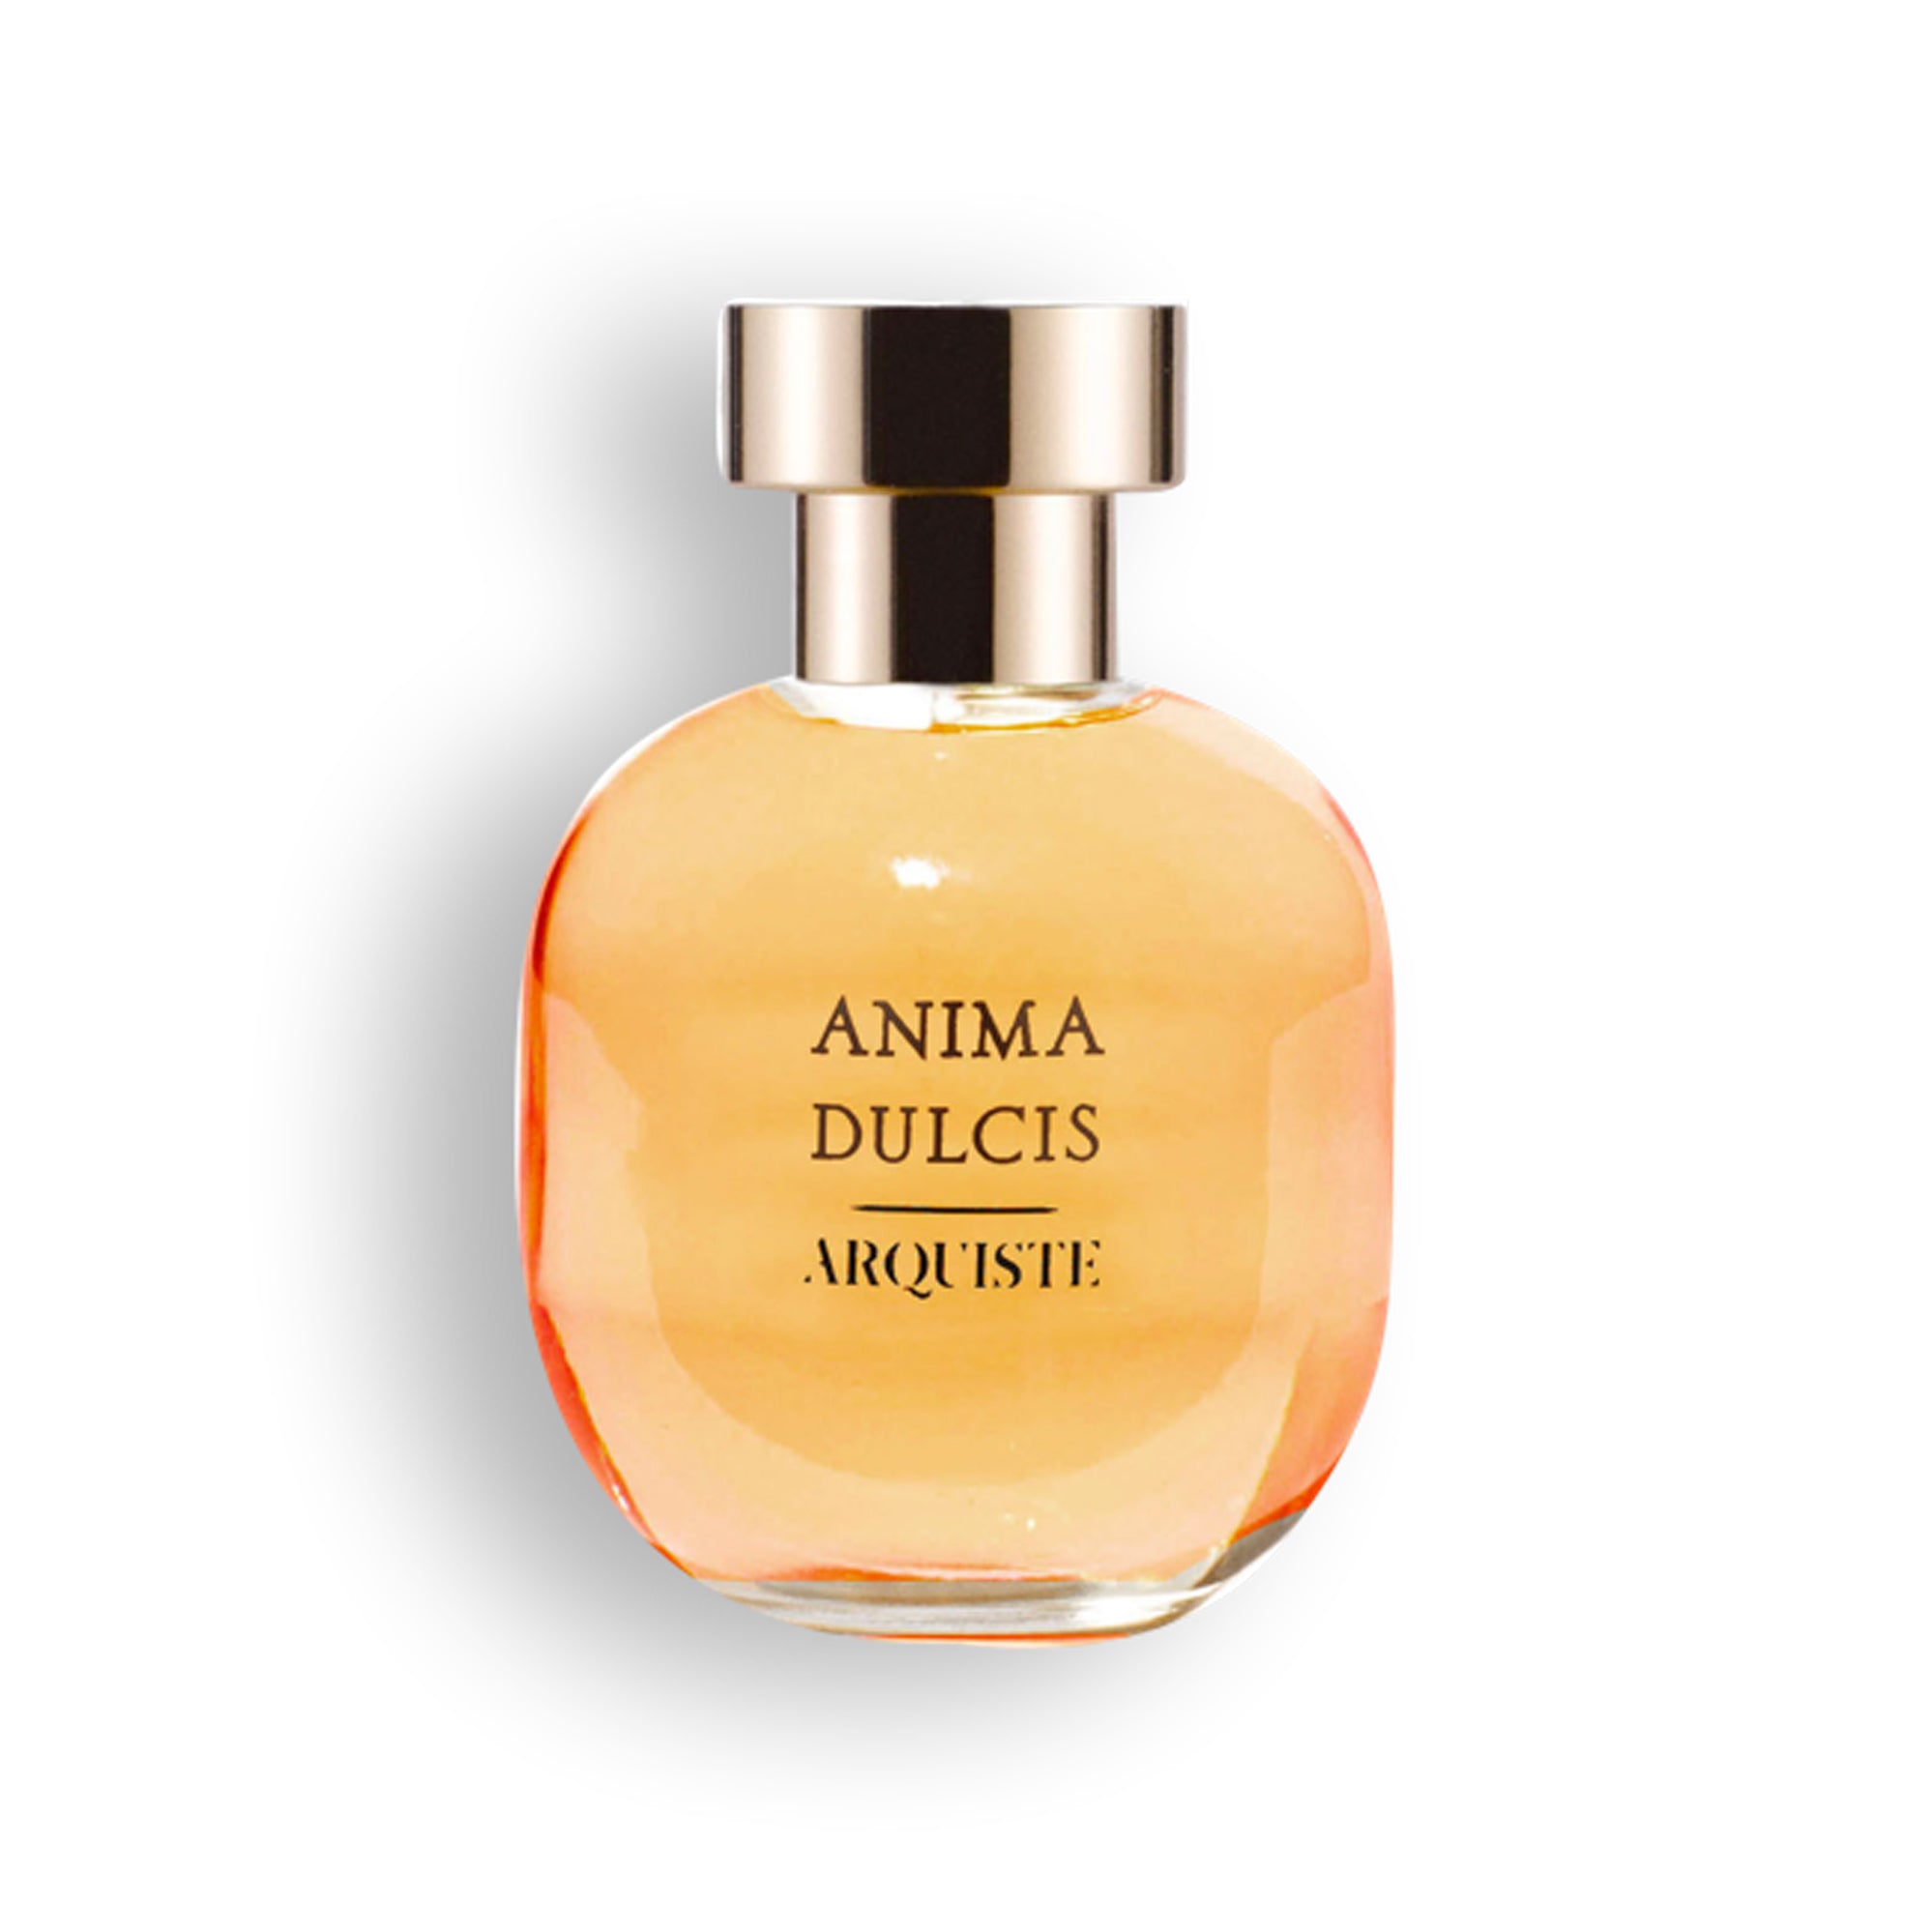 Anima Dulcis 100ml Eau de Parfum Bottle by Arquiste